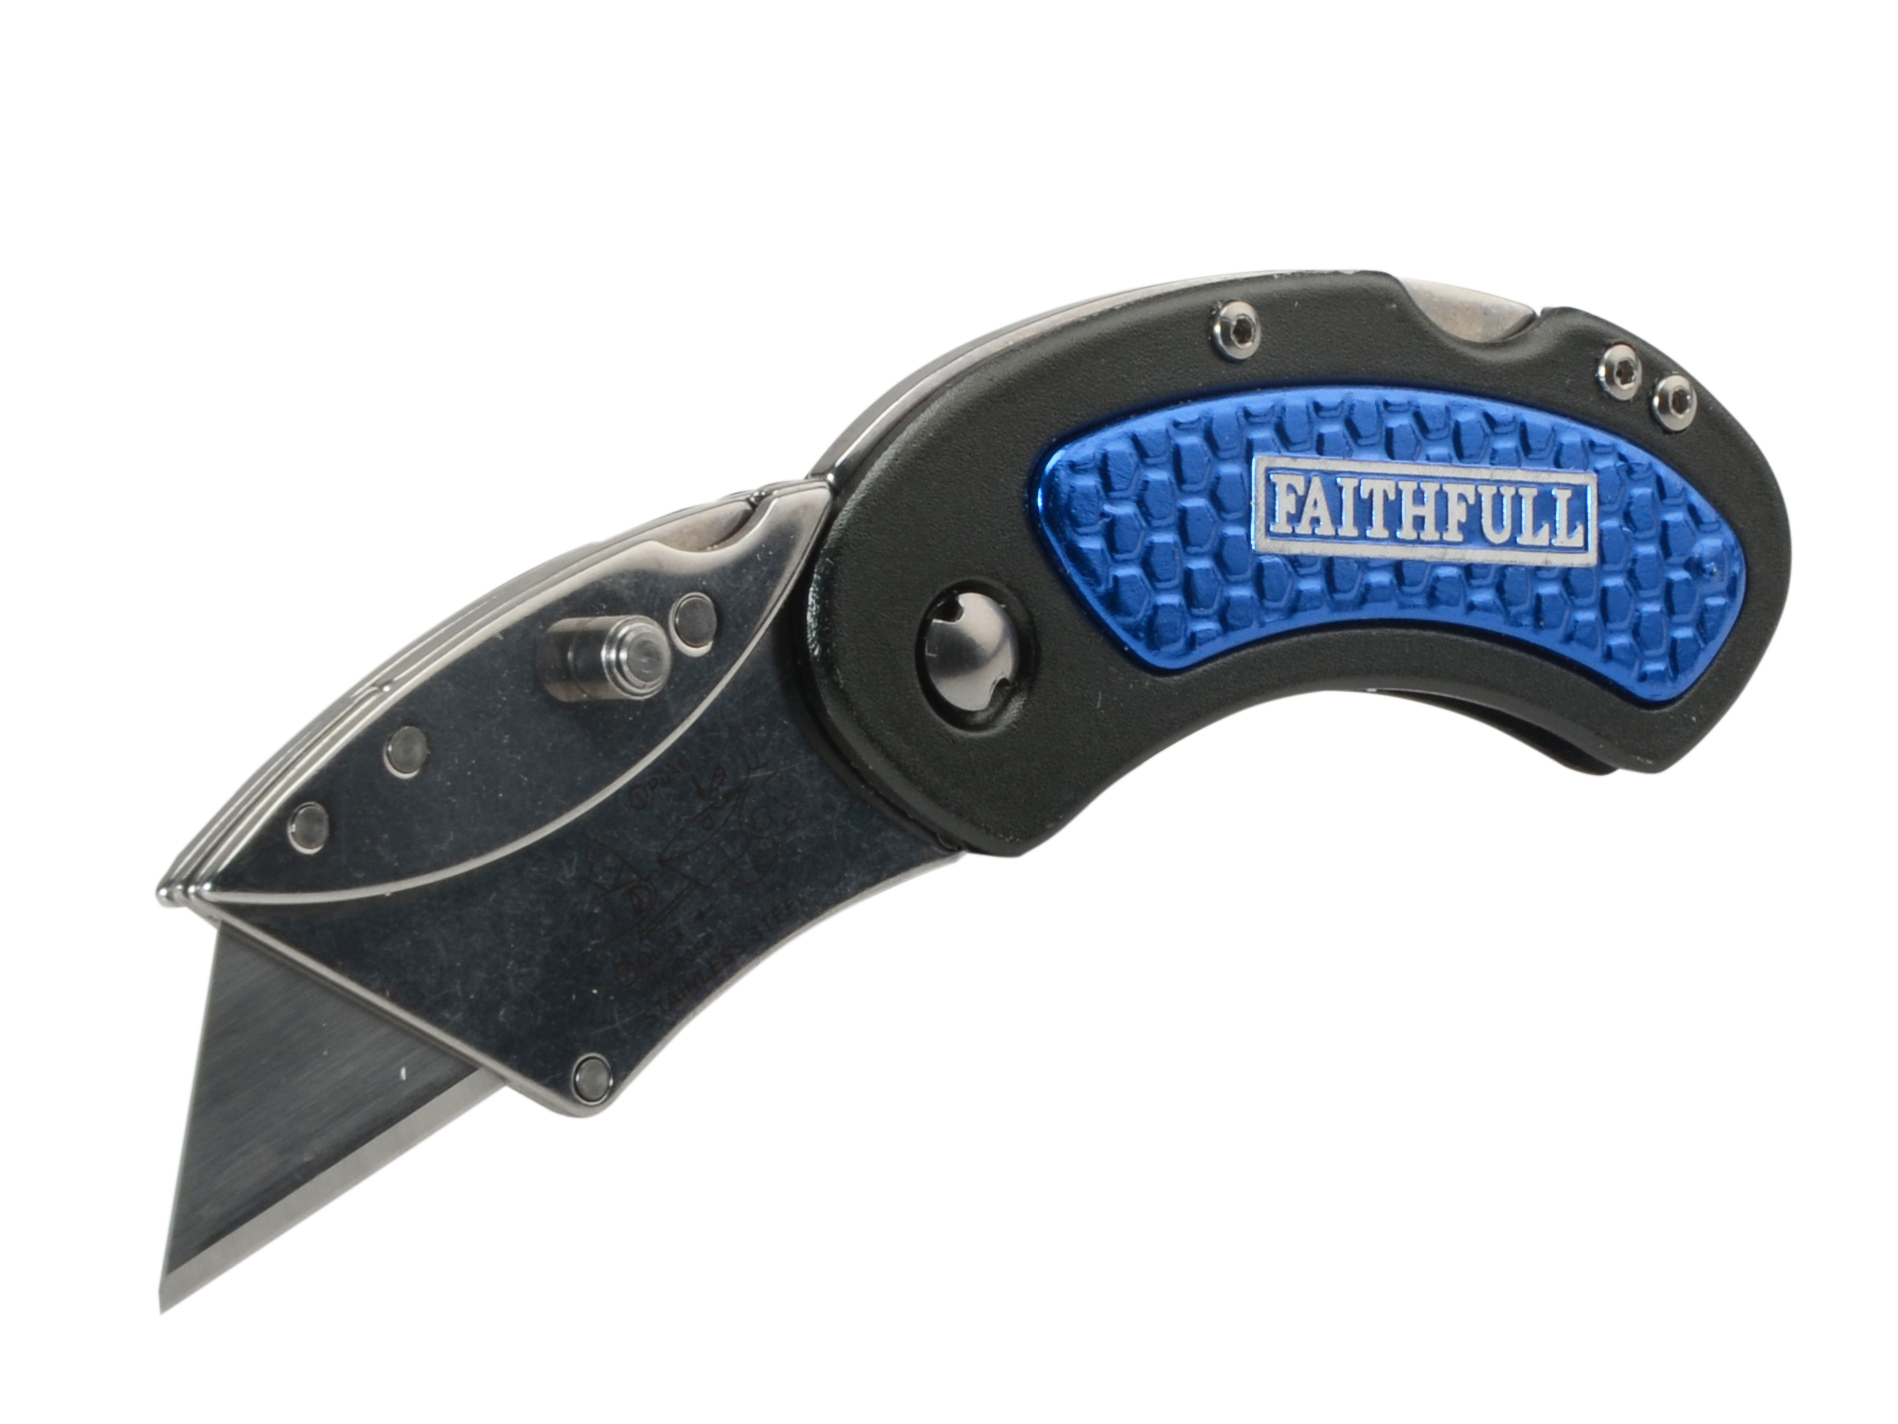 Faithfull Utility Folding Knife With Blade Lock - XMS23FOLDING